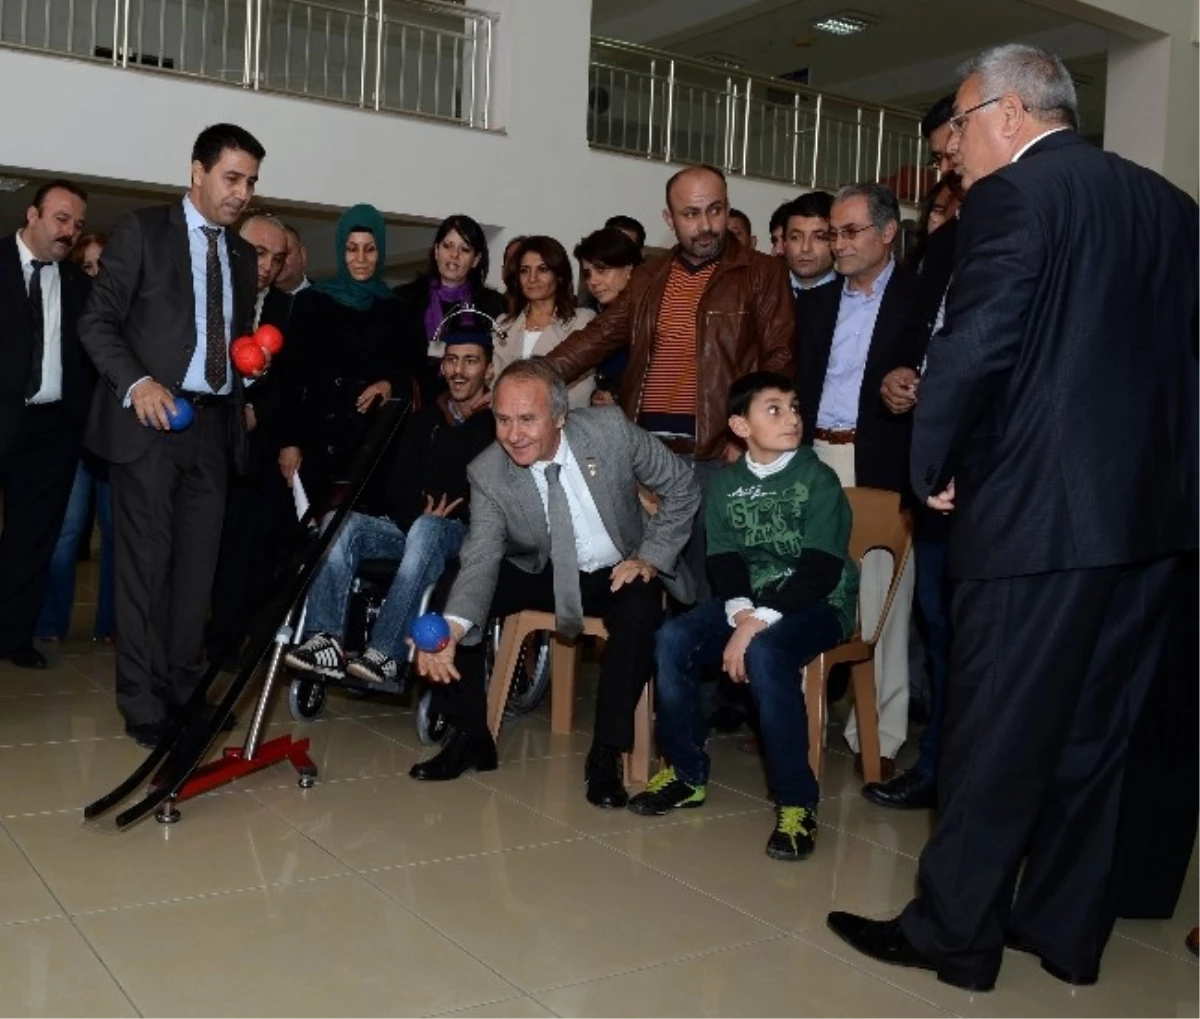 56 Engelli Vatandaşa Tekerlekli Sandalye Dağıtıldı